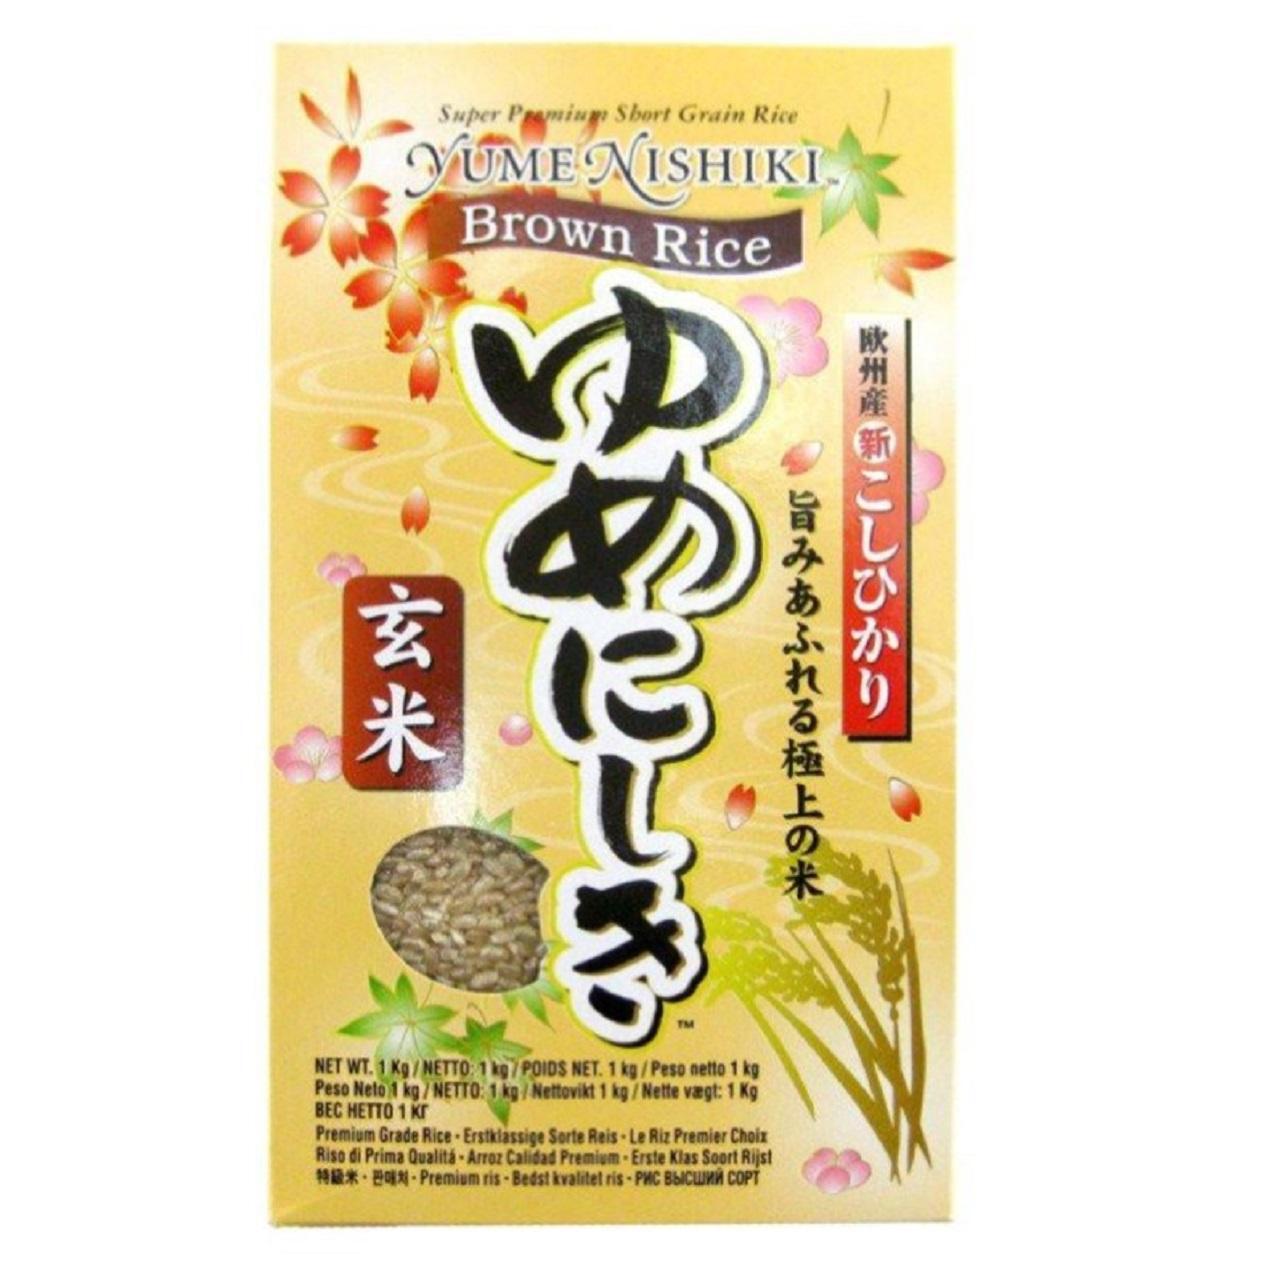 Yumenishiki Brown Rice 1kg